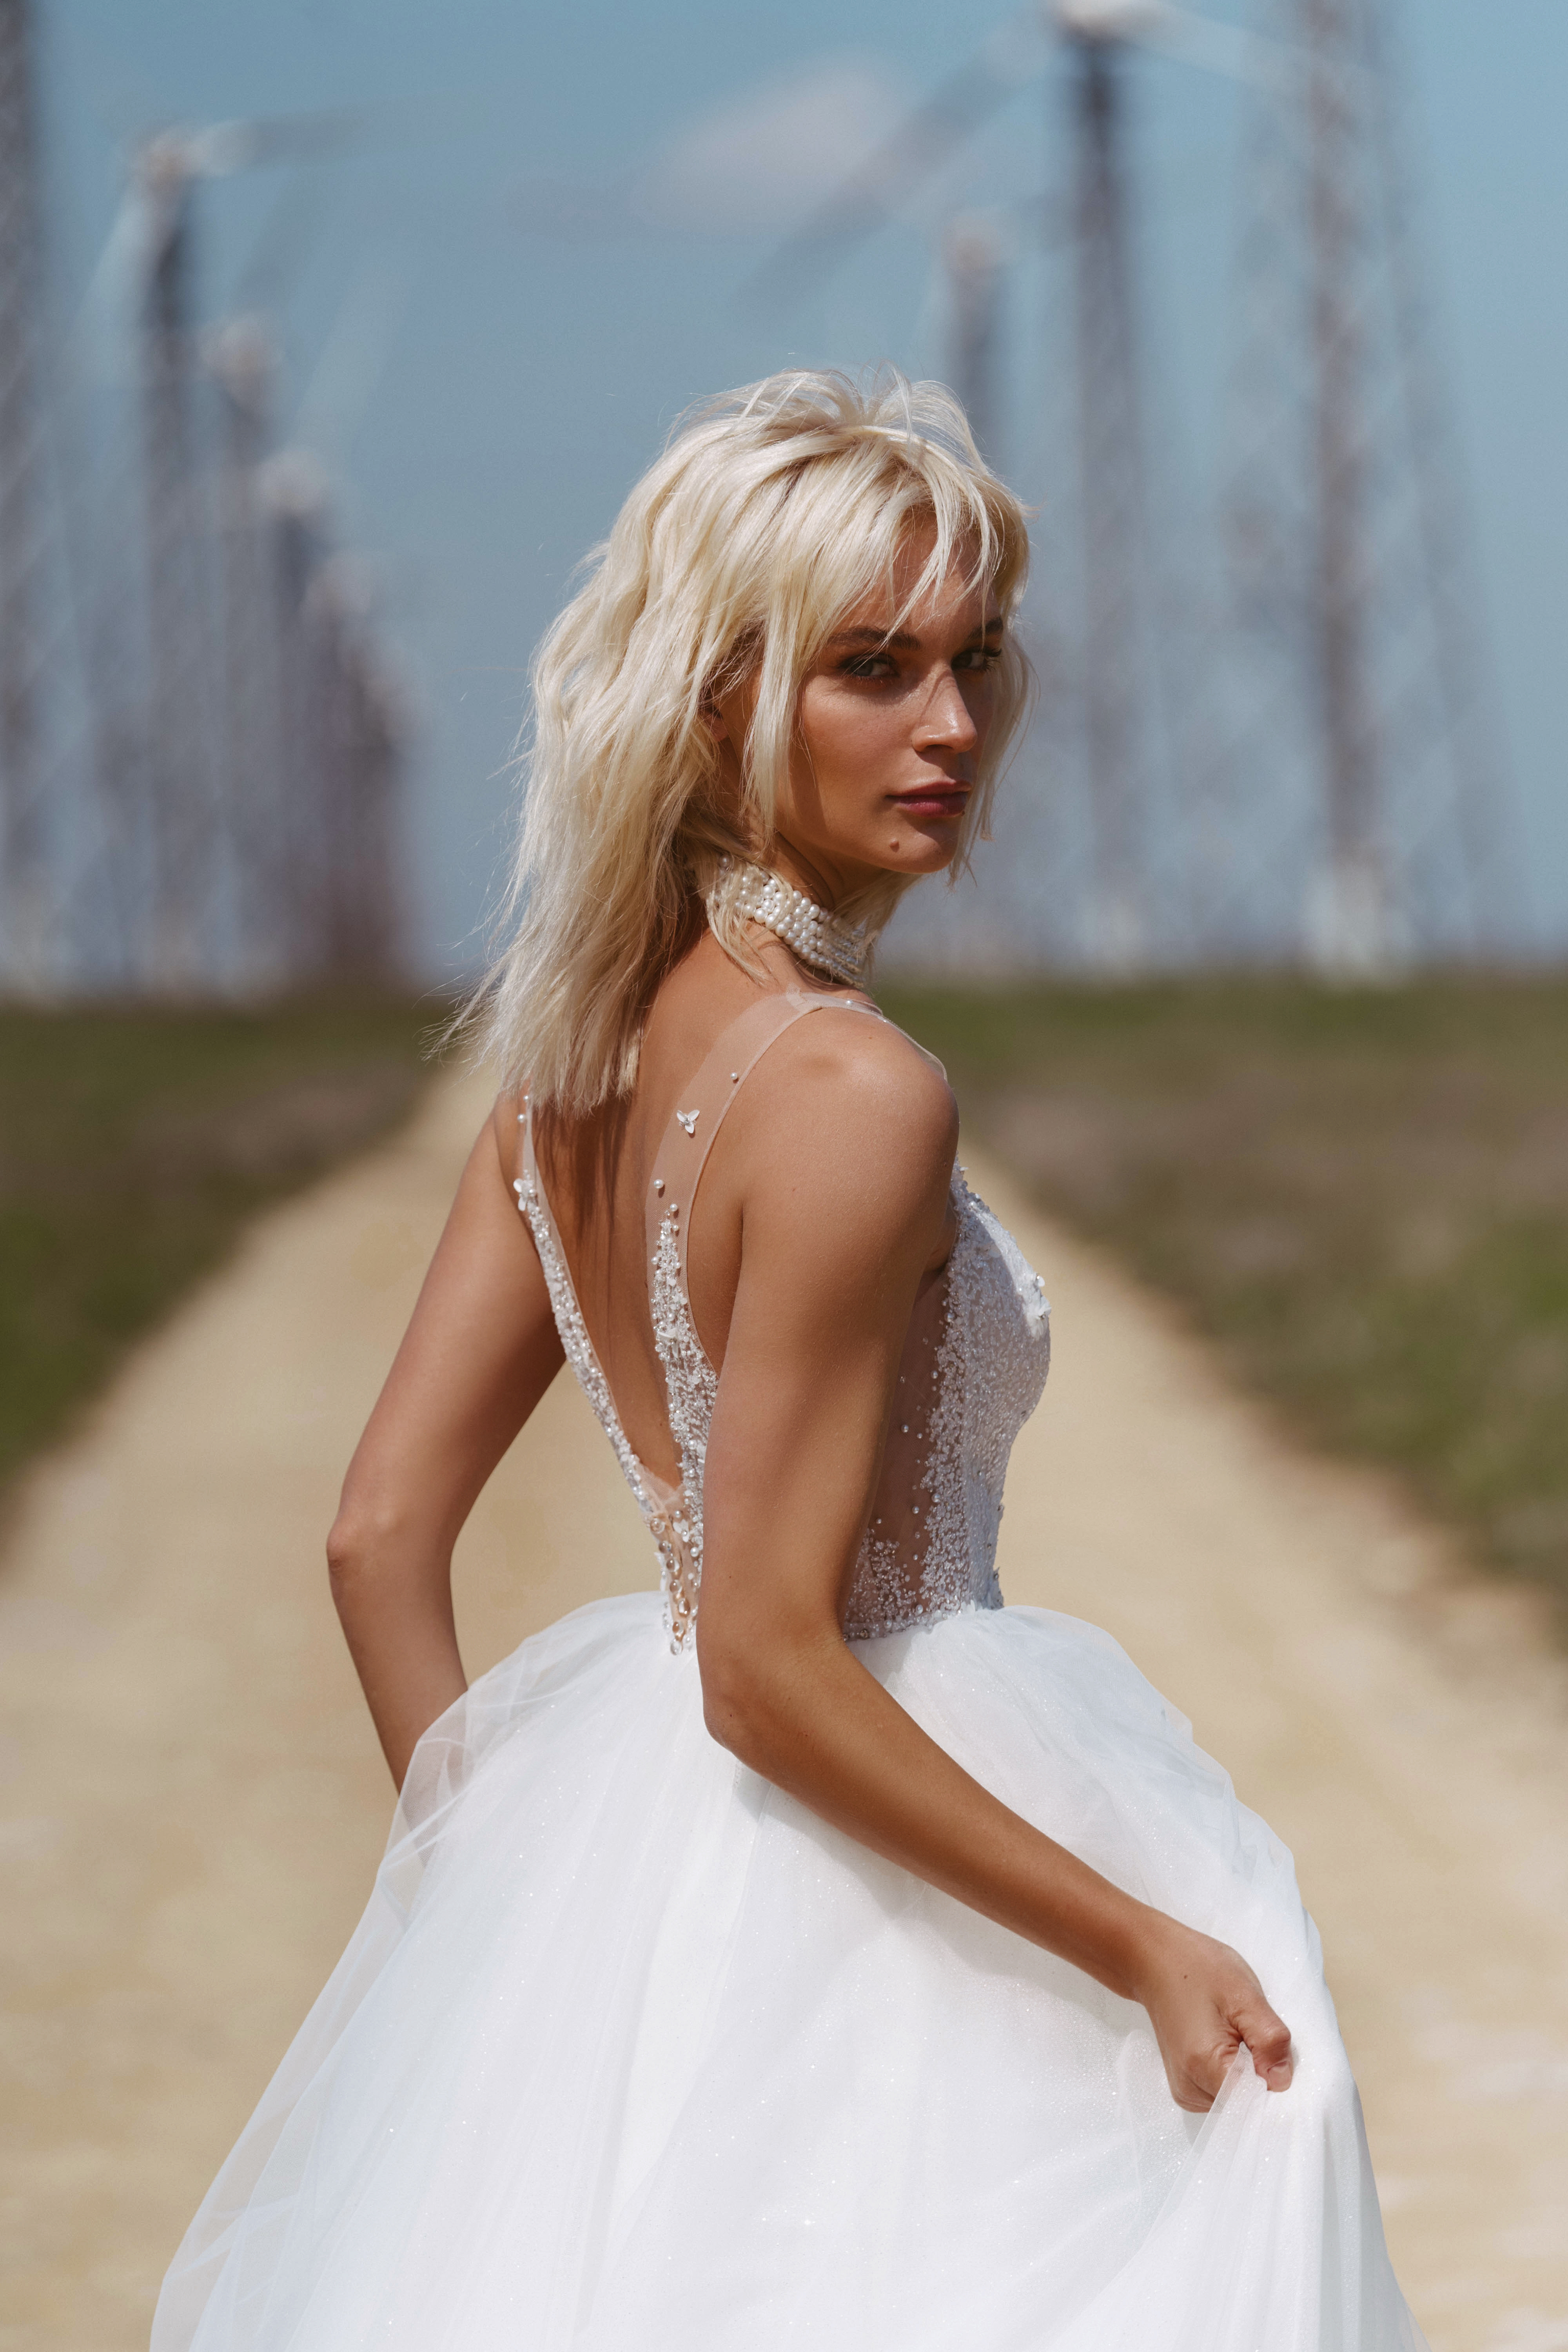 Купить свадебное платье «Селеста» Наталья Романова из коллекции Блаш 2022 года в салоне «Мэри Трюфель»